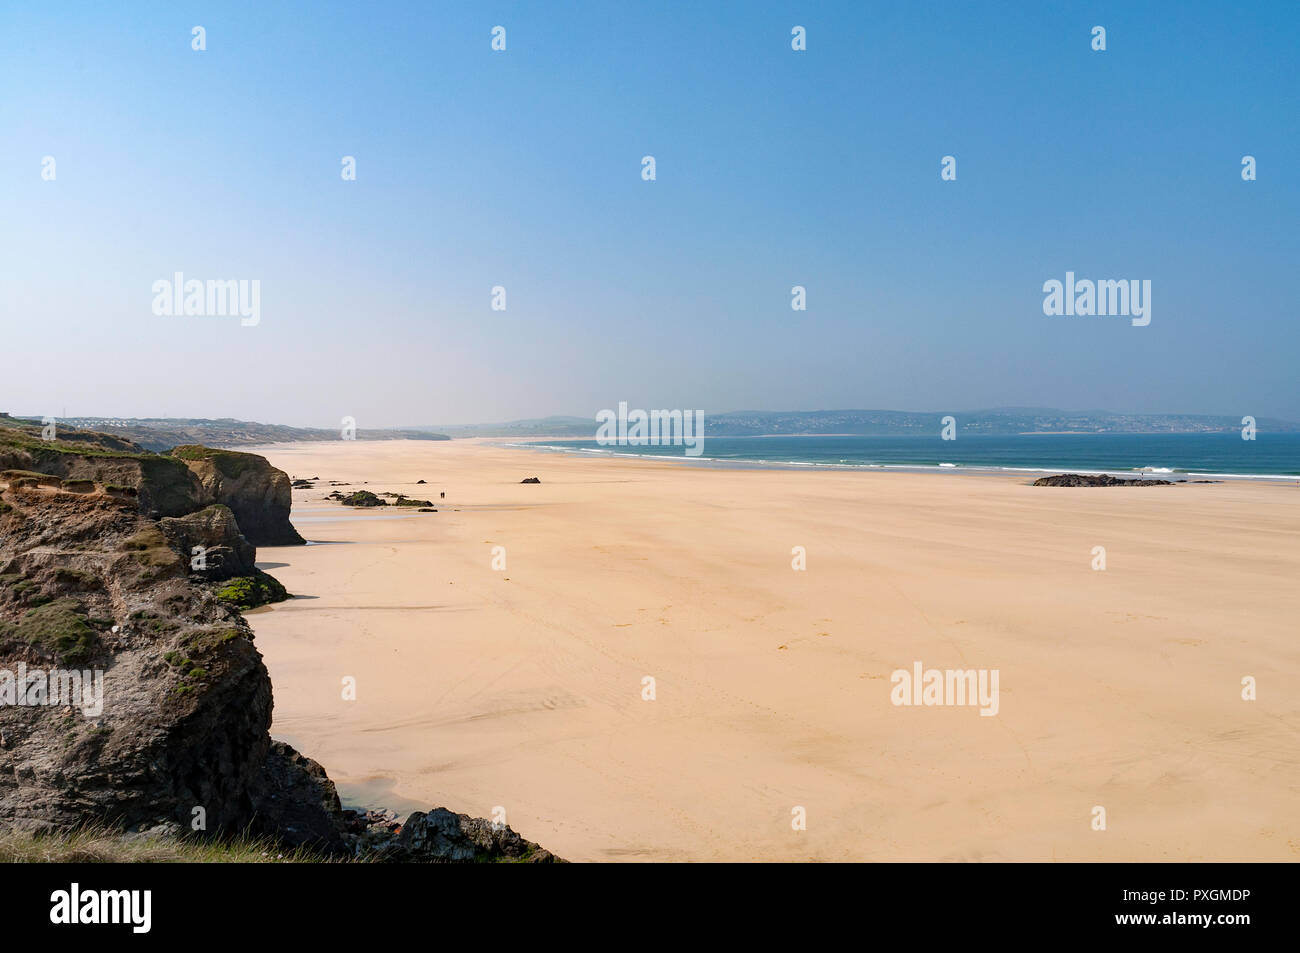 Plage de sable à proximité de gwithian hayle, Cornwall, Angleterre, Grande-Bretagne, Royaume-Uni. Banque D'Images